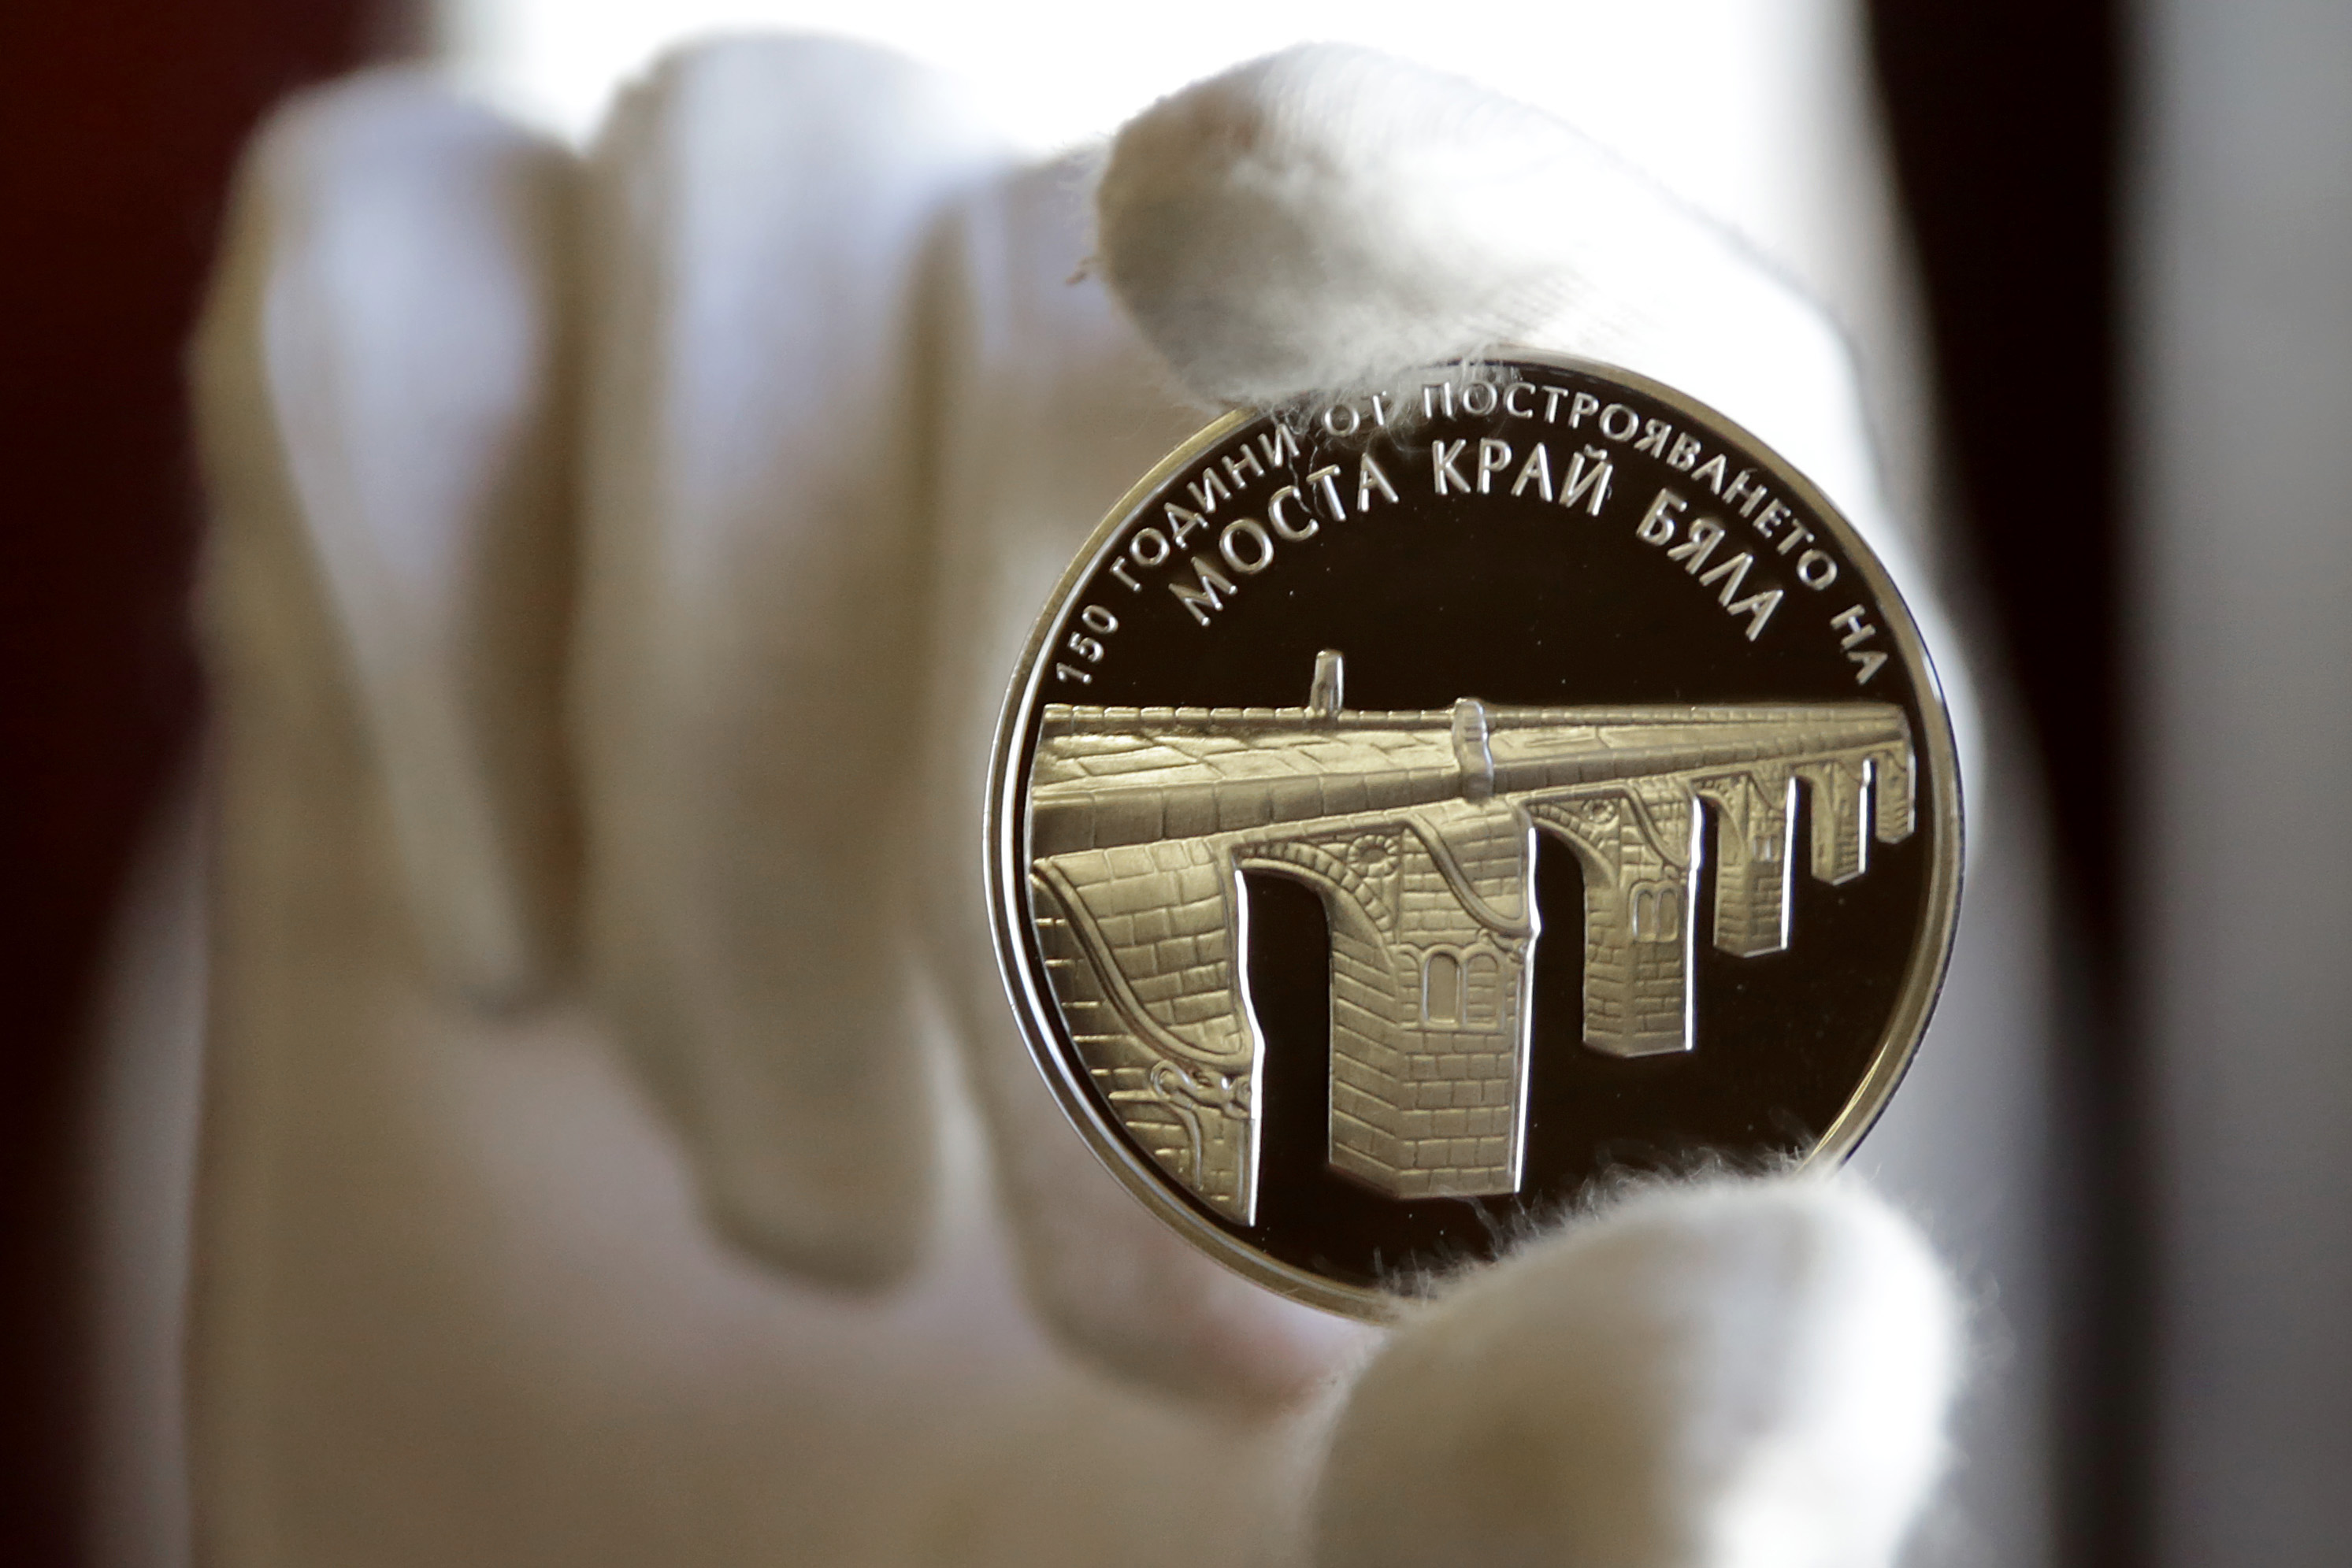 Сребърна възпоменателна монета на тема ”150 години от построяването на моста на Колю Фичето край Бяла”